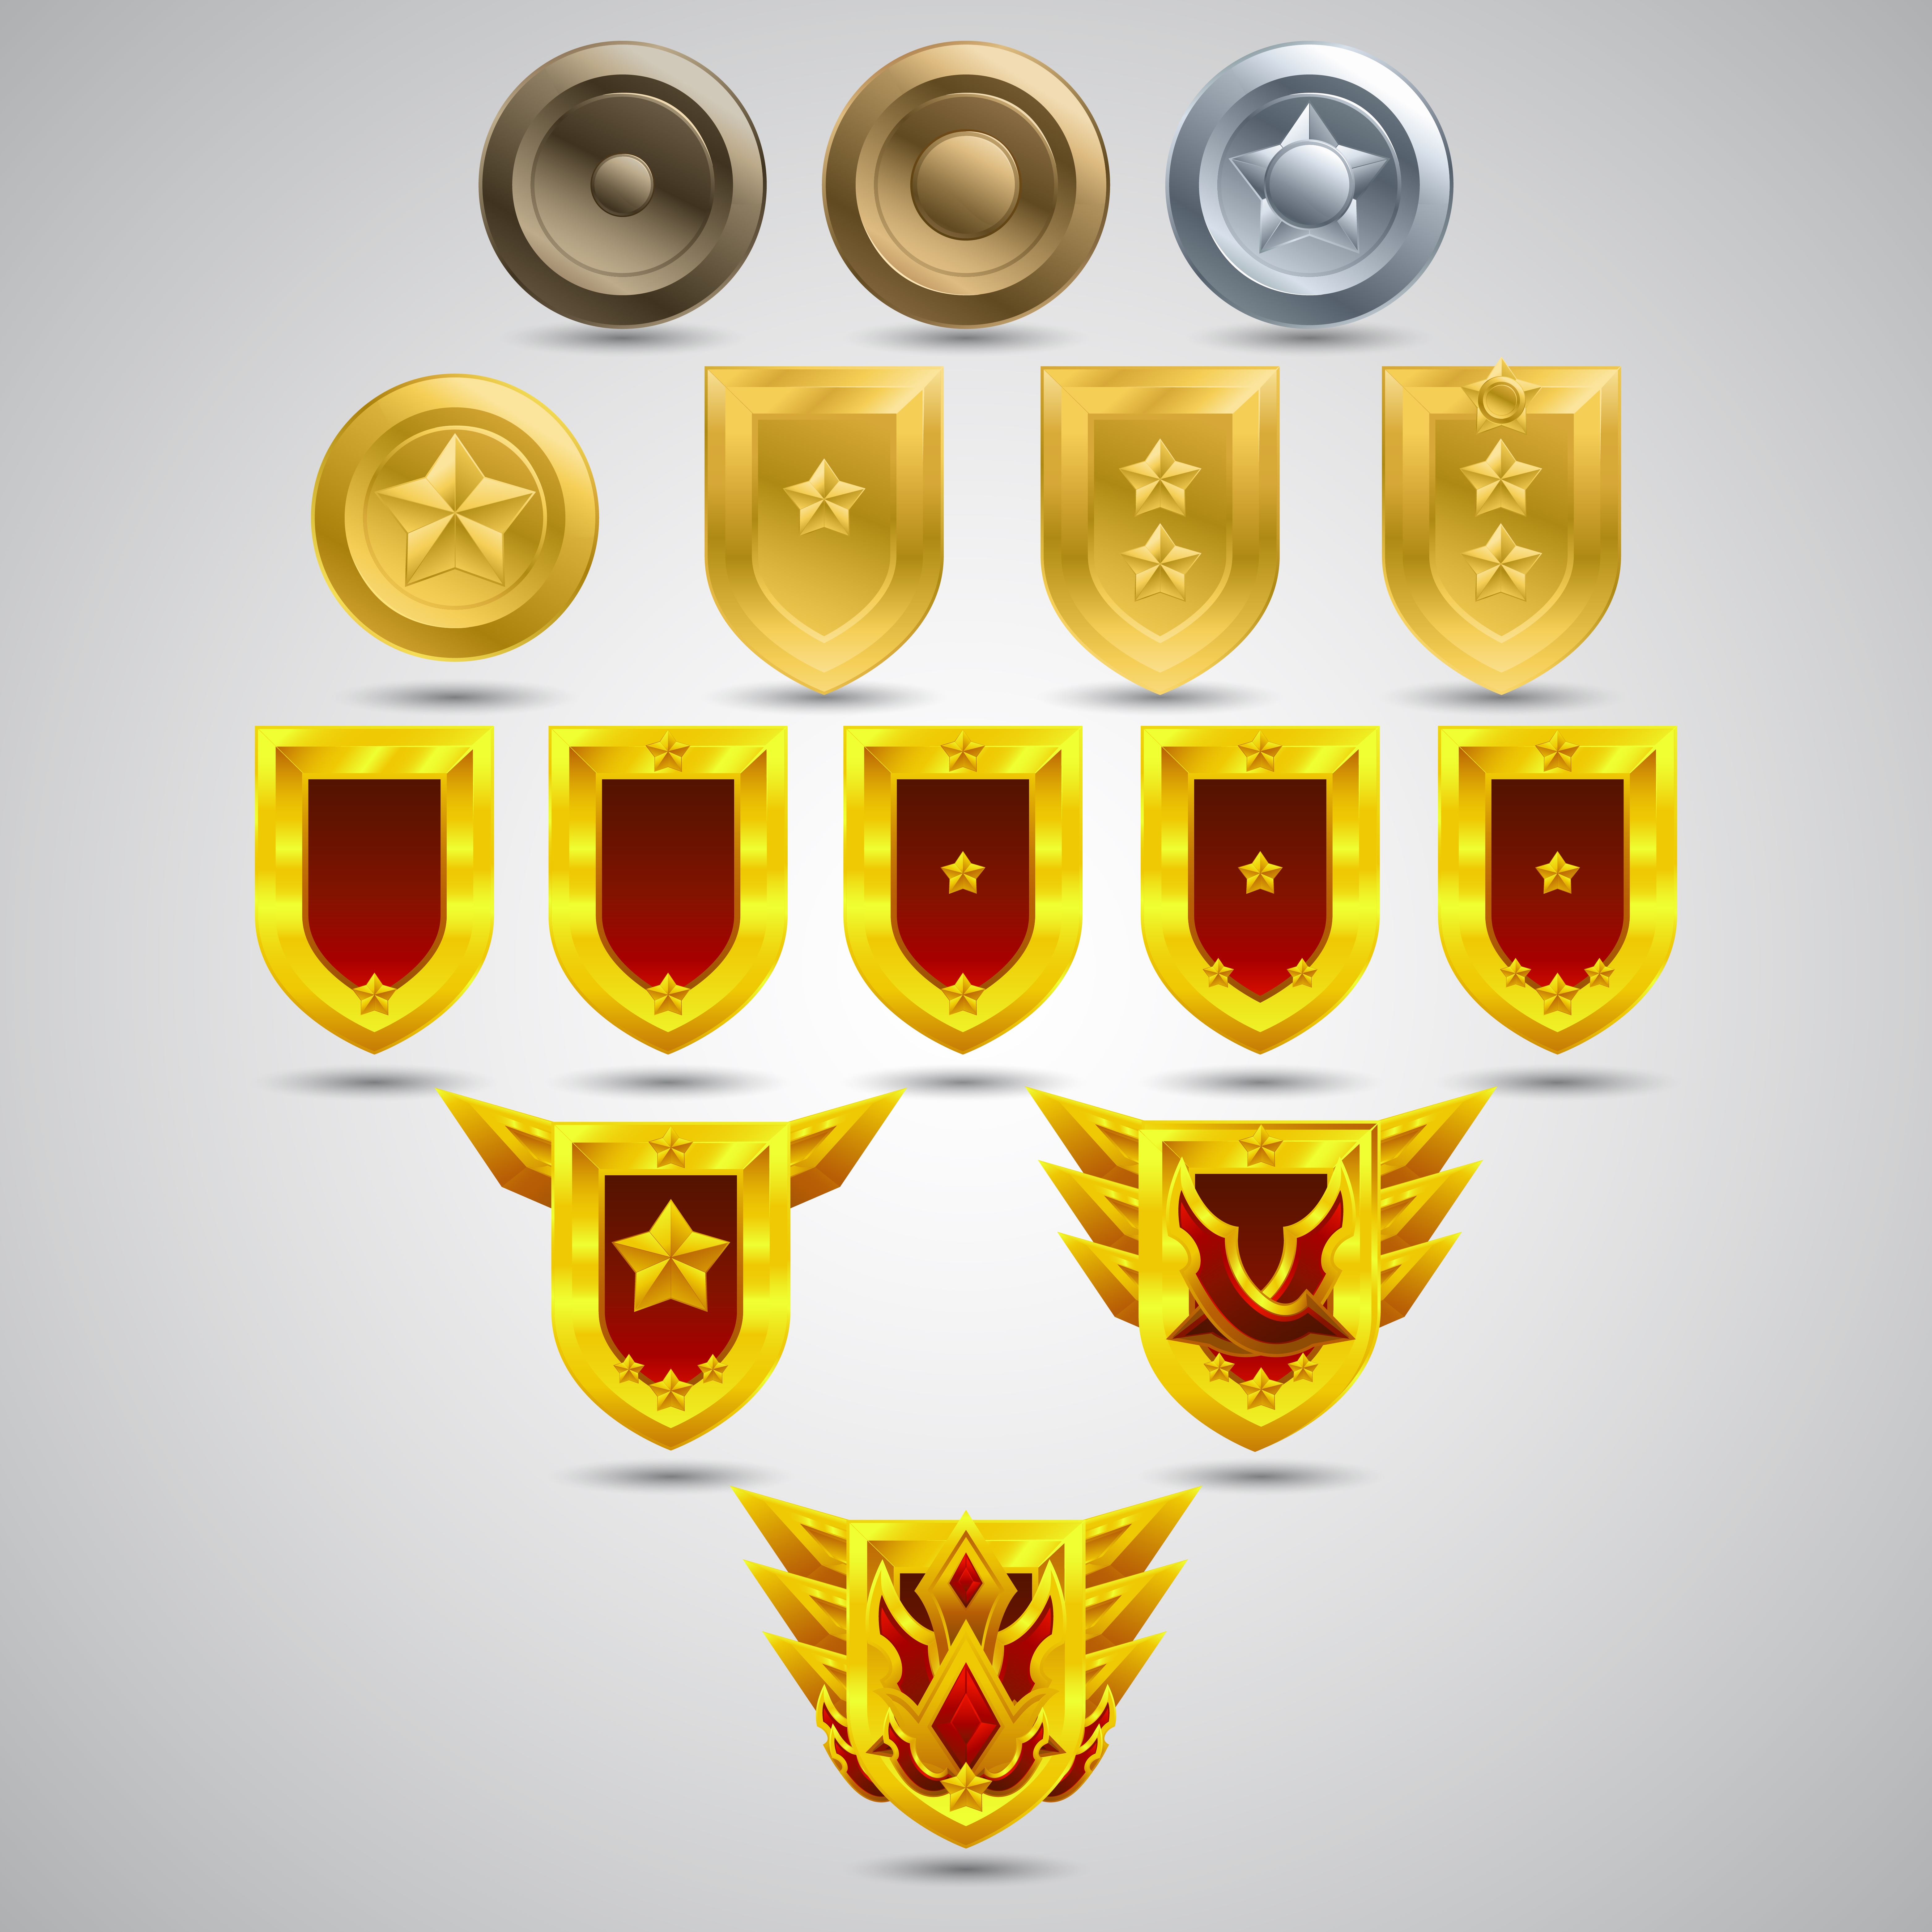 Badges-shields-achievement-games-emblem-object-guards